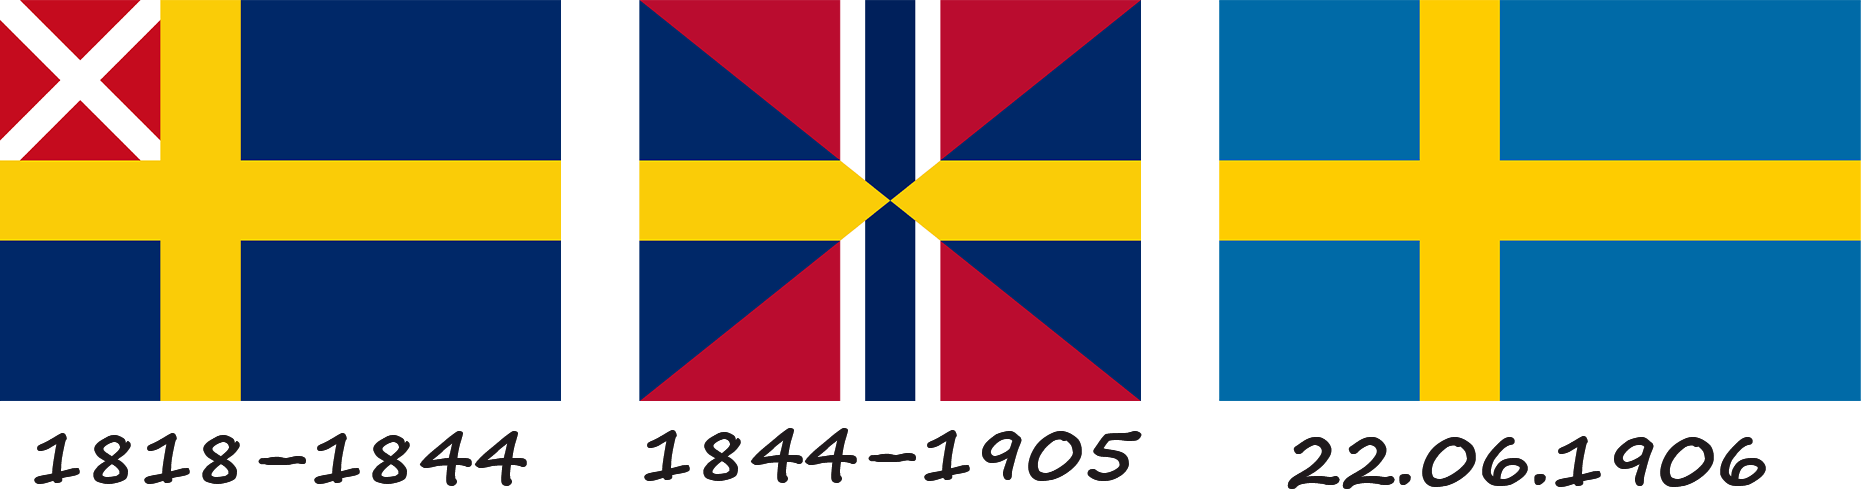 Historia de la bandera sueca